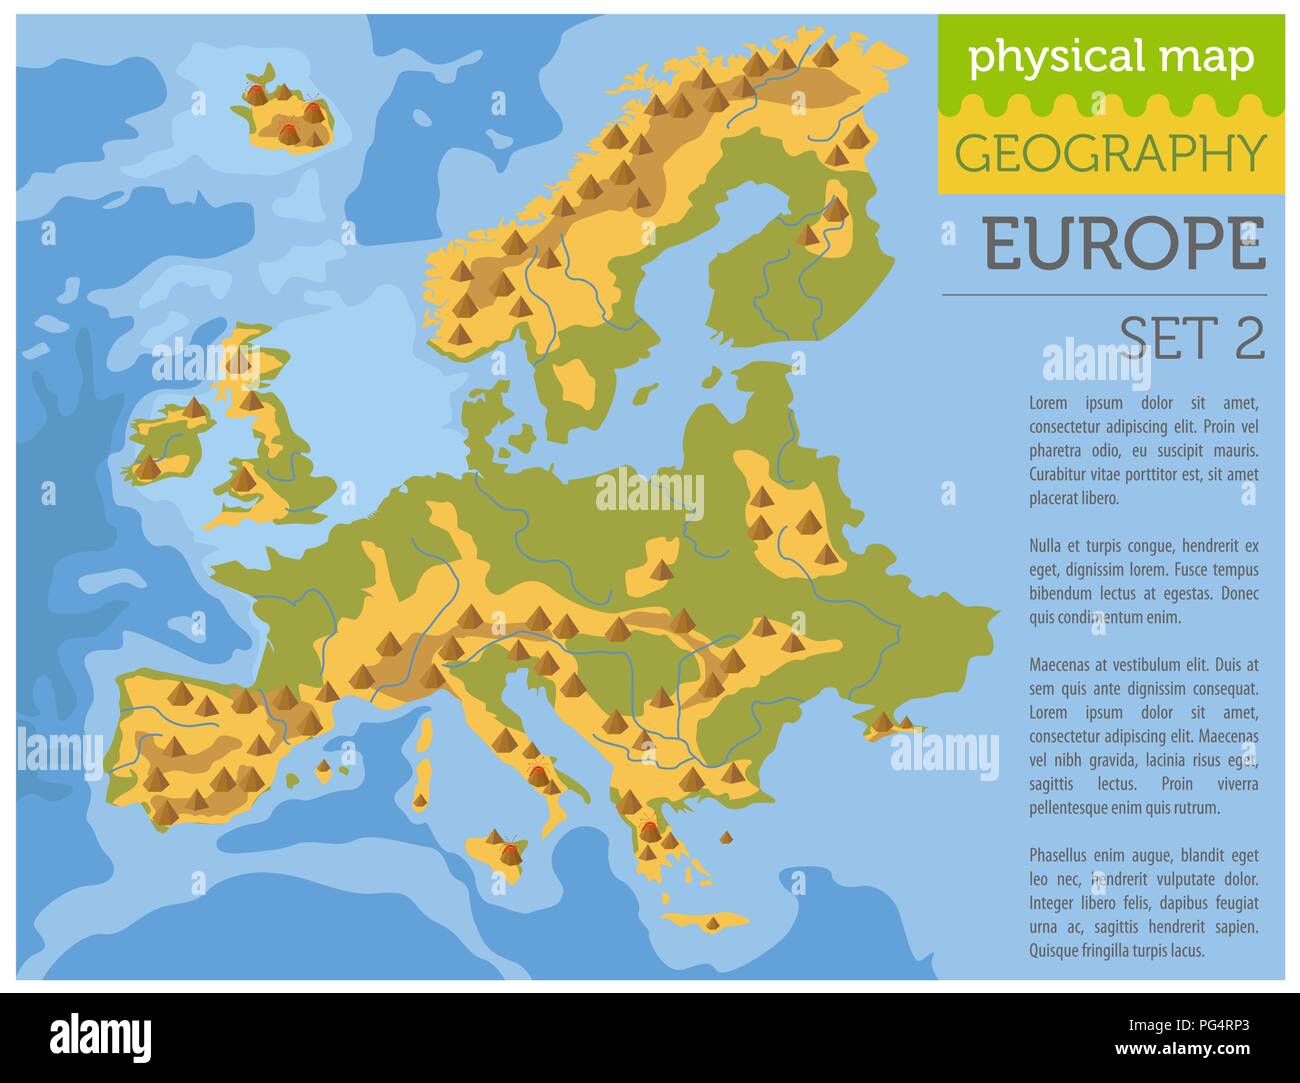 Appartamento Europa mappa fisica degli elementi del costruttore sulla superficie dell'acqua. Costruire la propria geografia infographics collection. Illustrazione Vettoriale Illustrazione Vettoriale